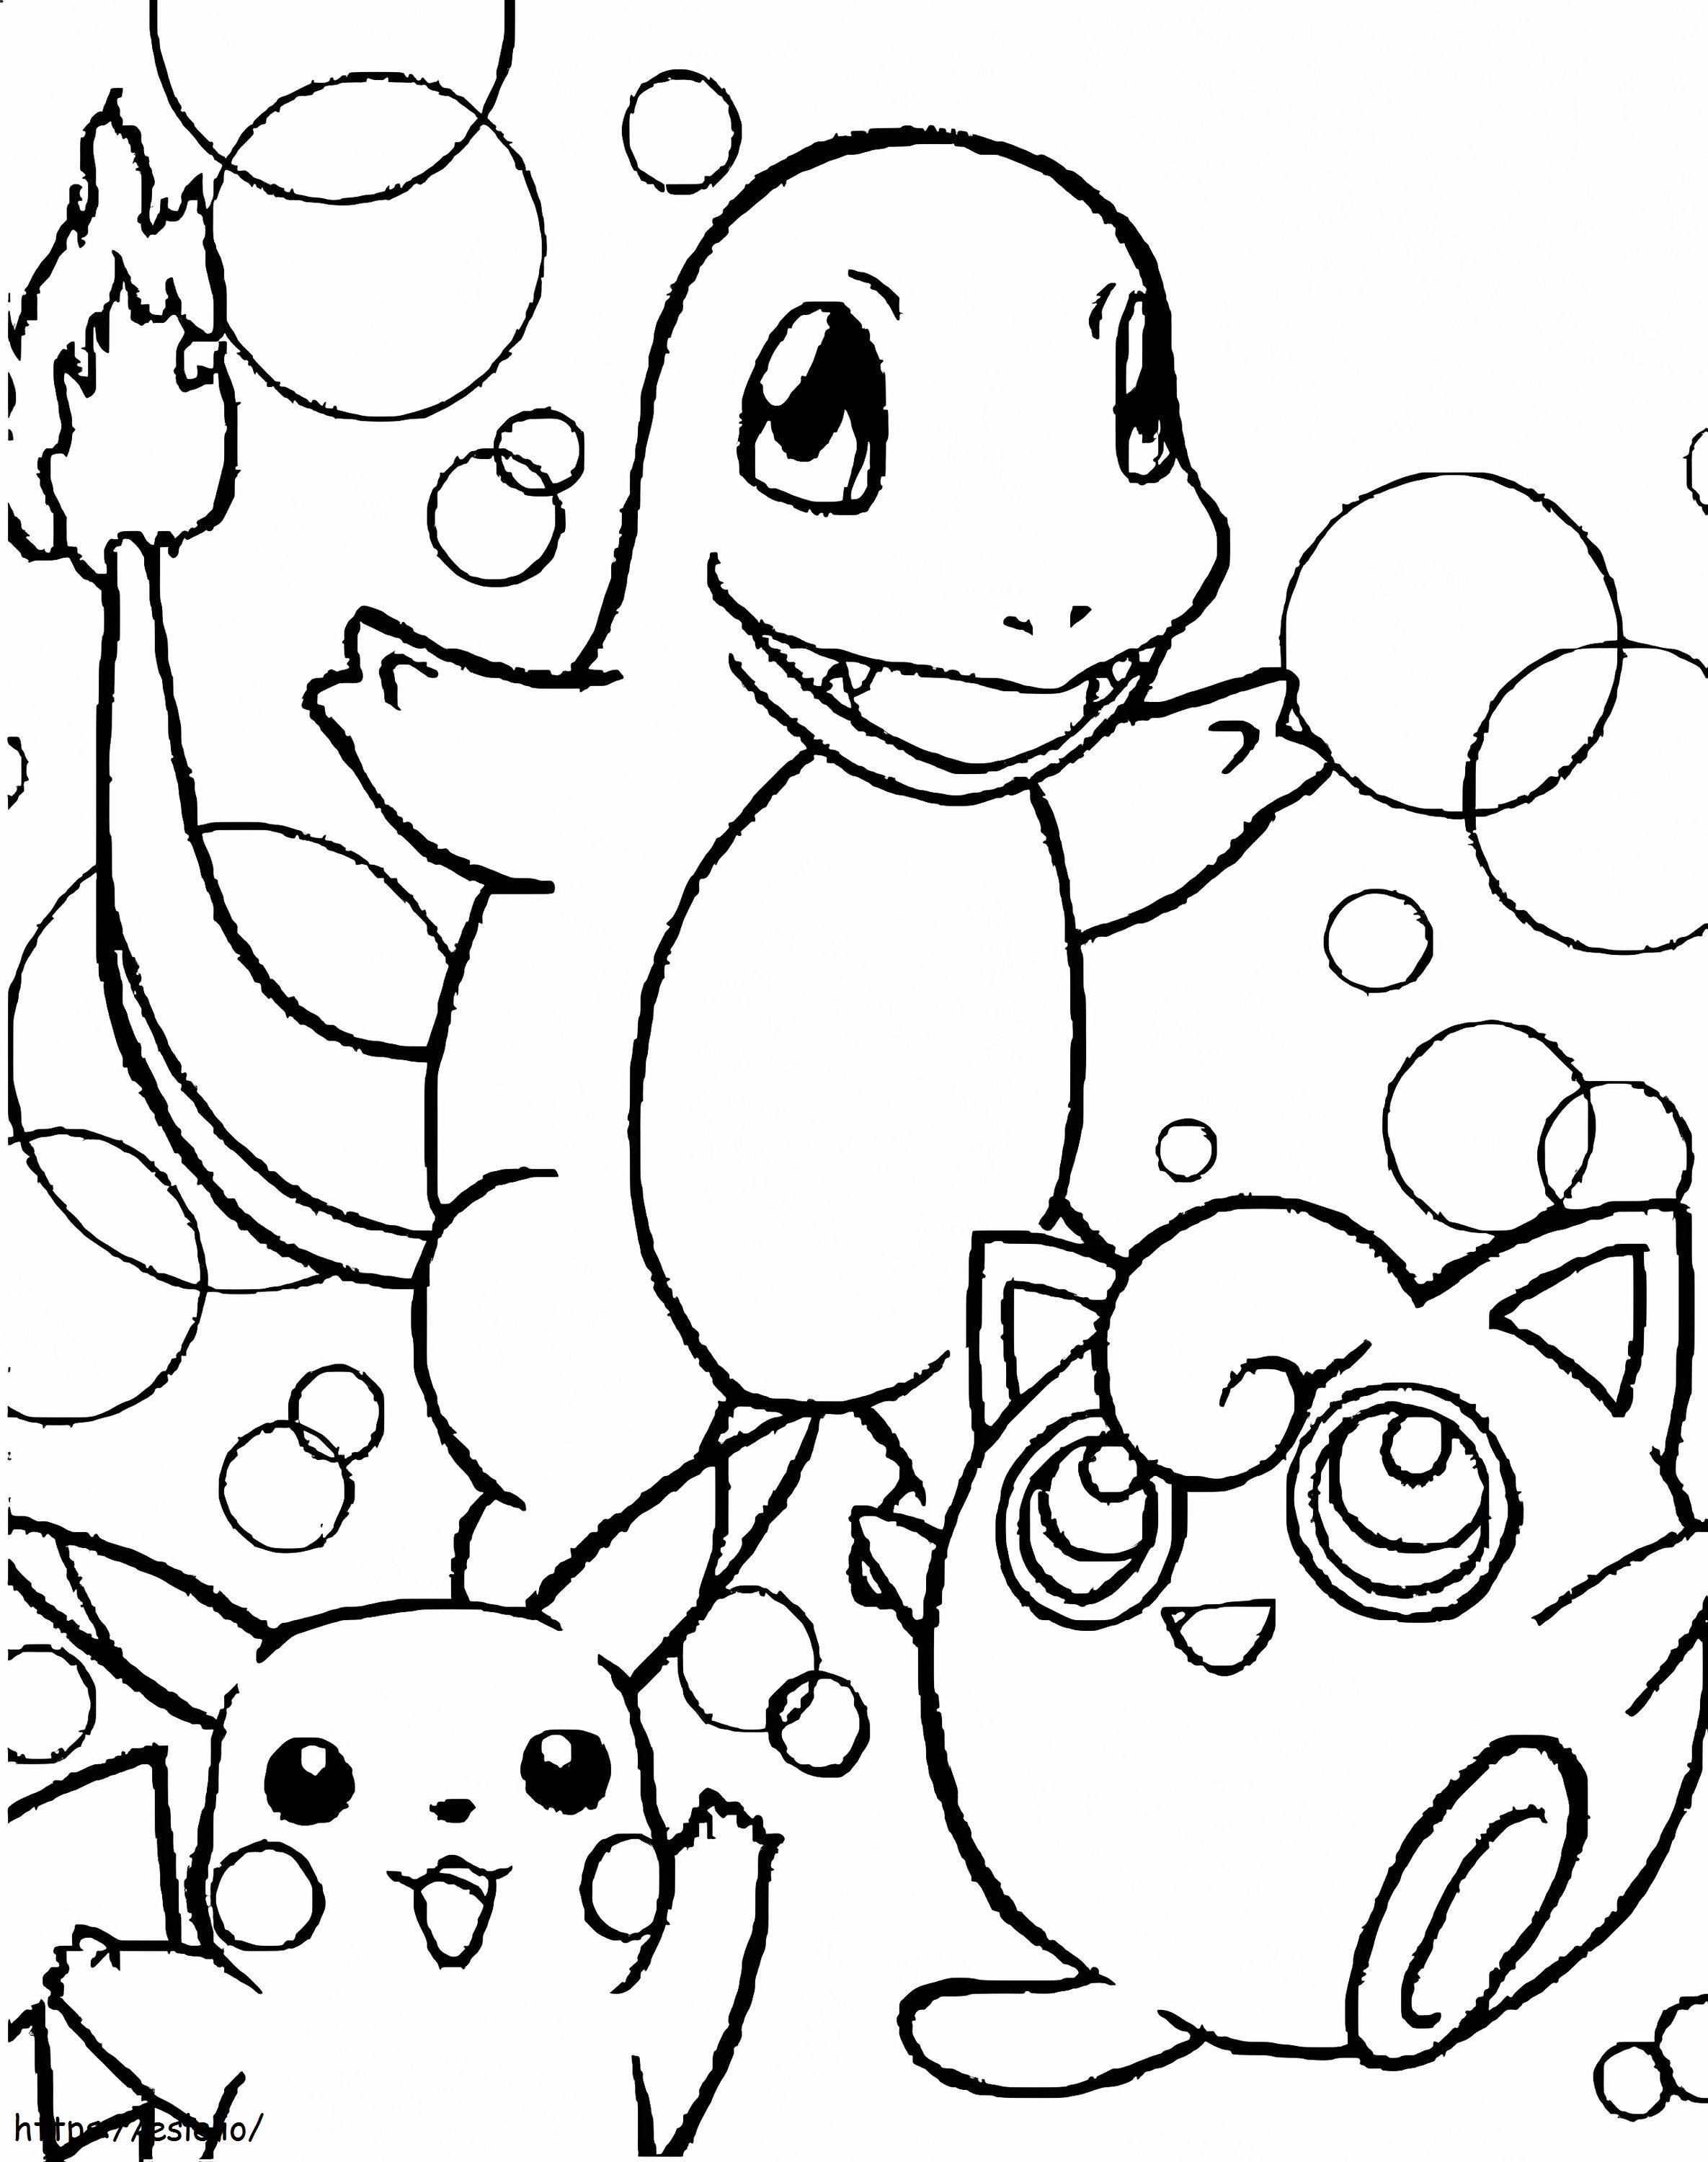 Salameche Et Pikachu coloring page